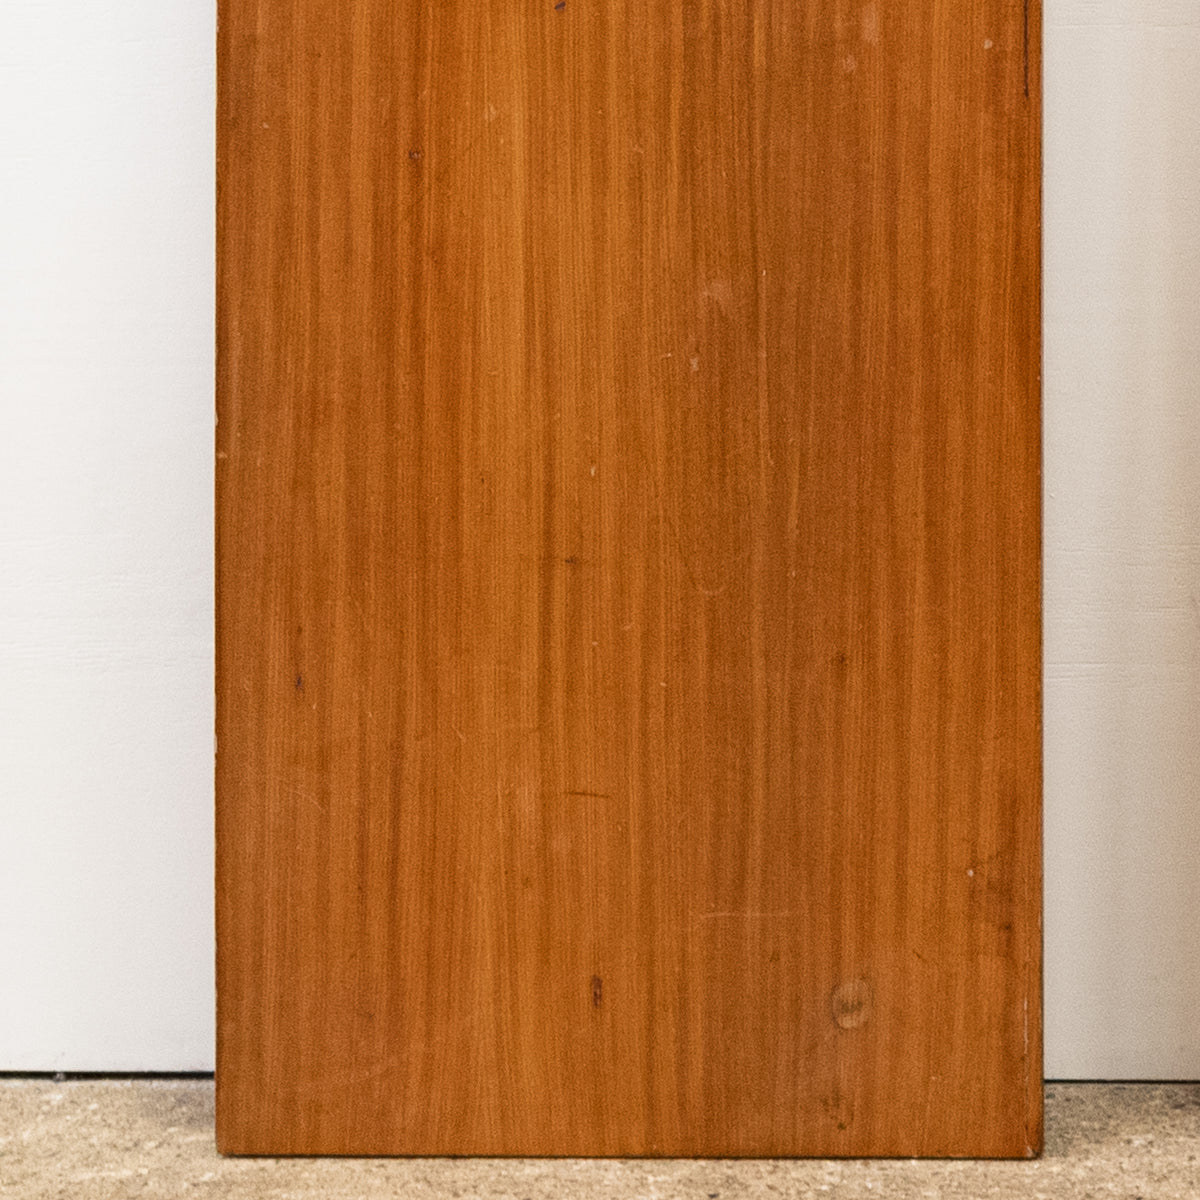 Reclaimed Iroko Veneer Worktop 299cm X 76.5cm | The Architectural Forum